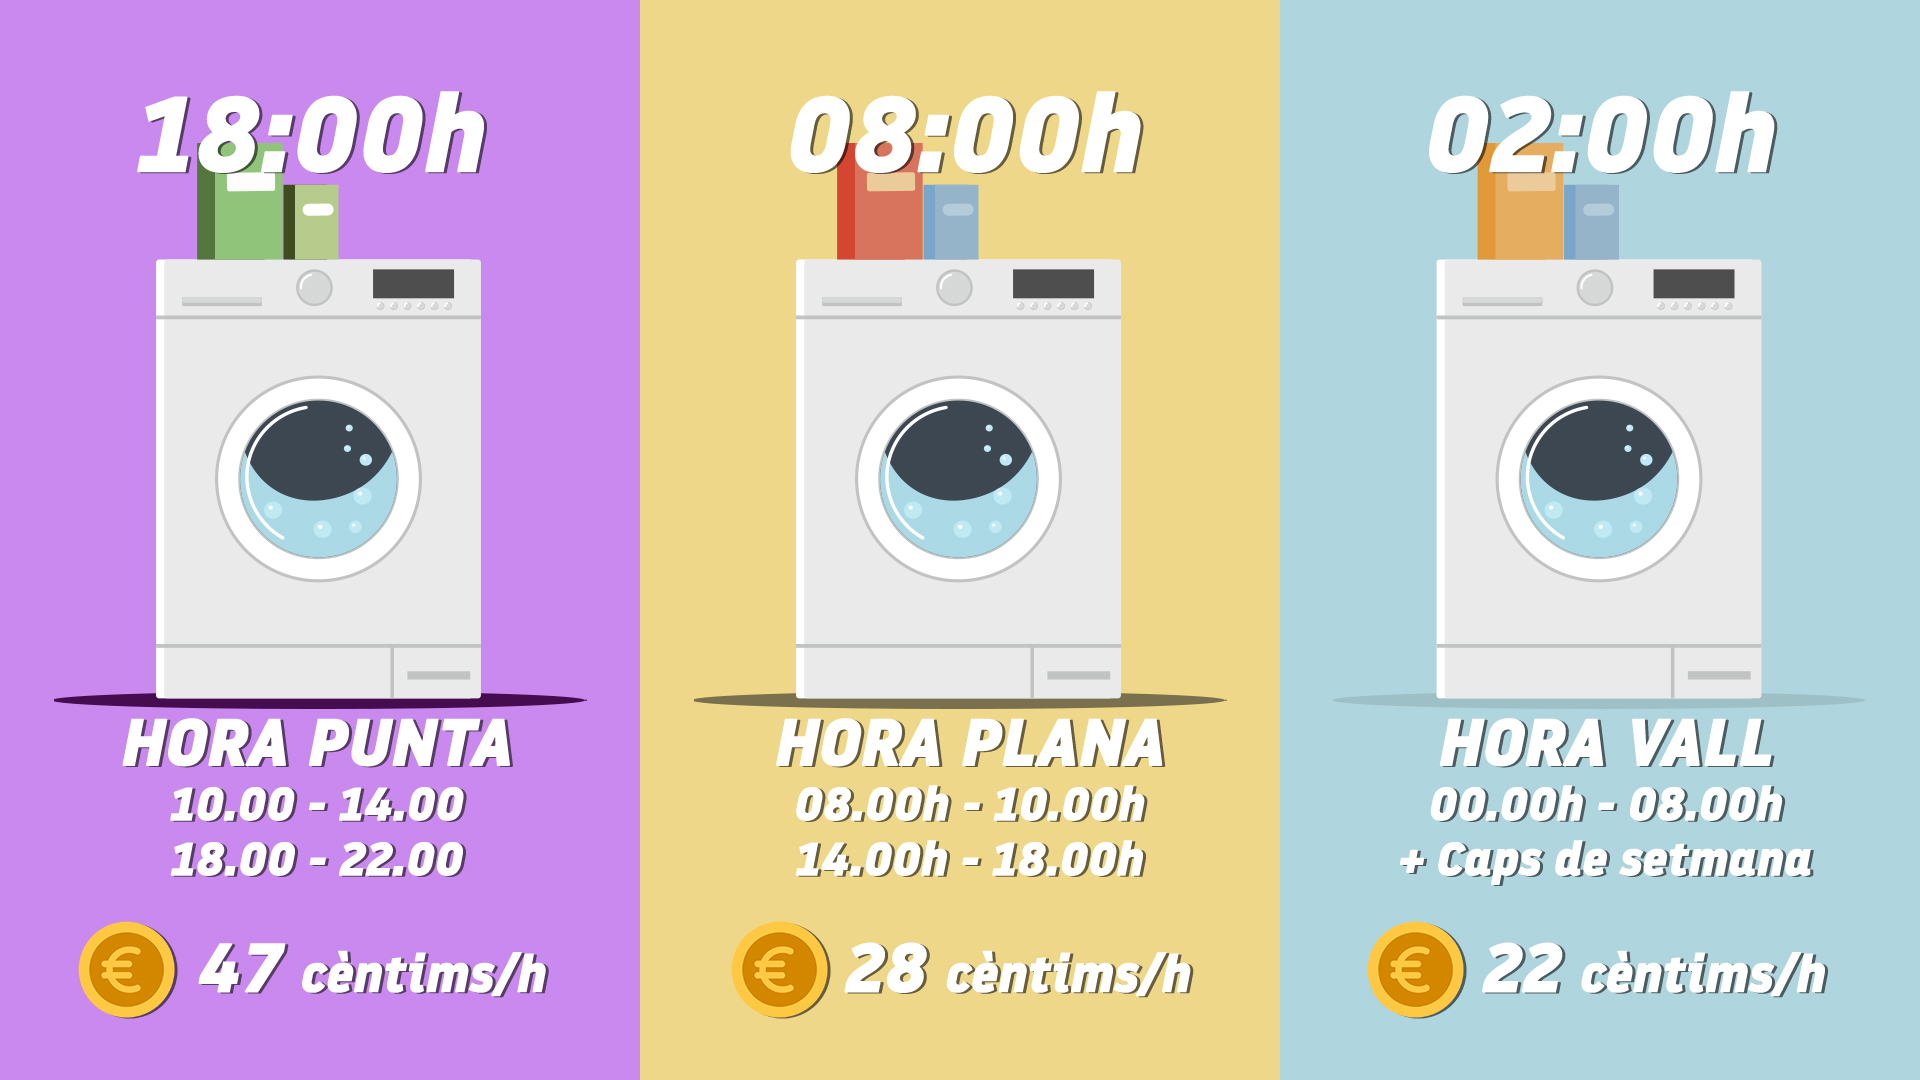 Quant costa ara posar la rentadora en cada tram horari amb la nova factura de la llum?